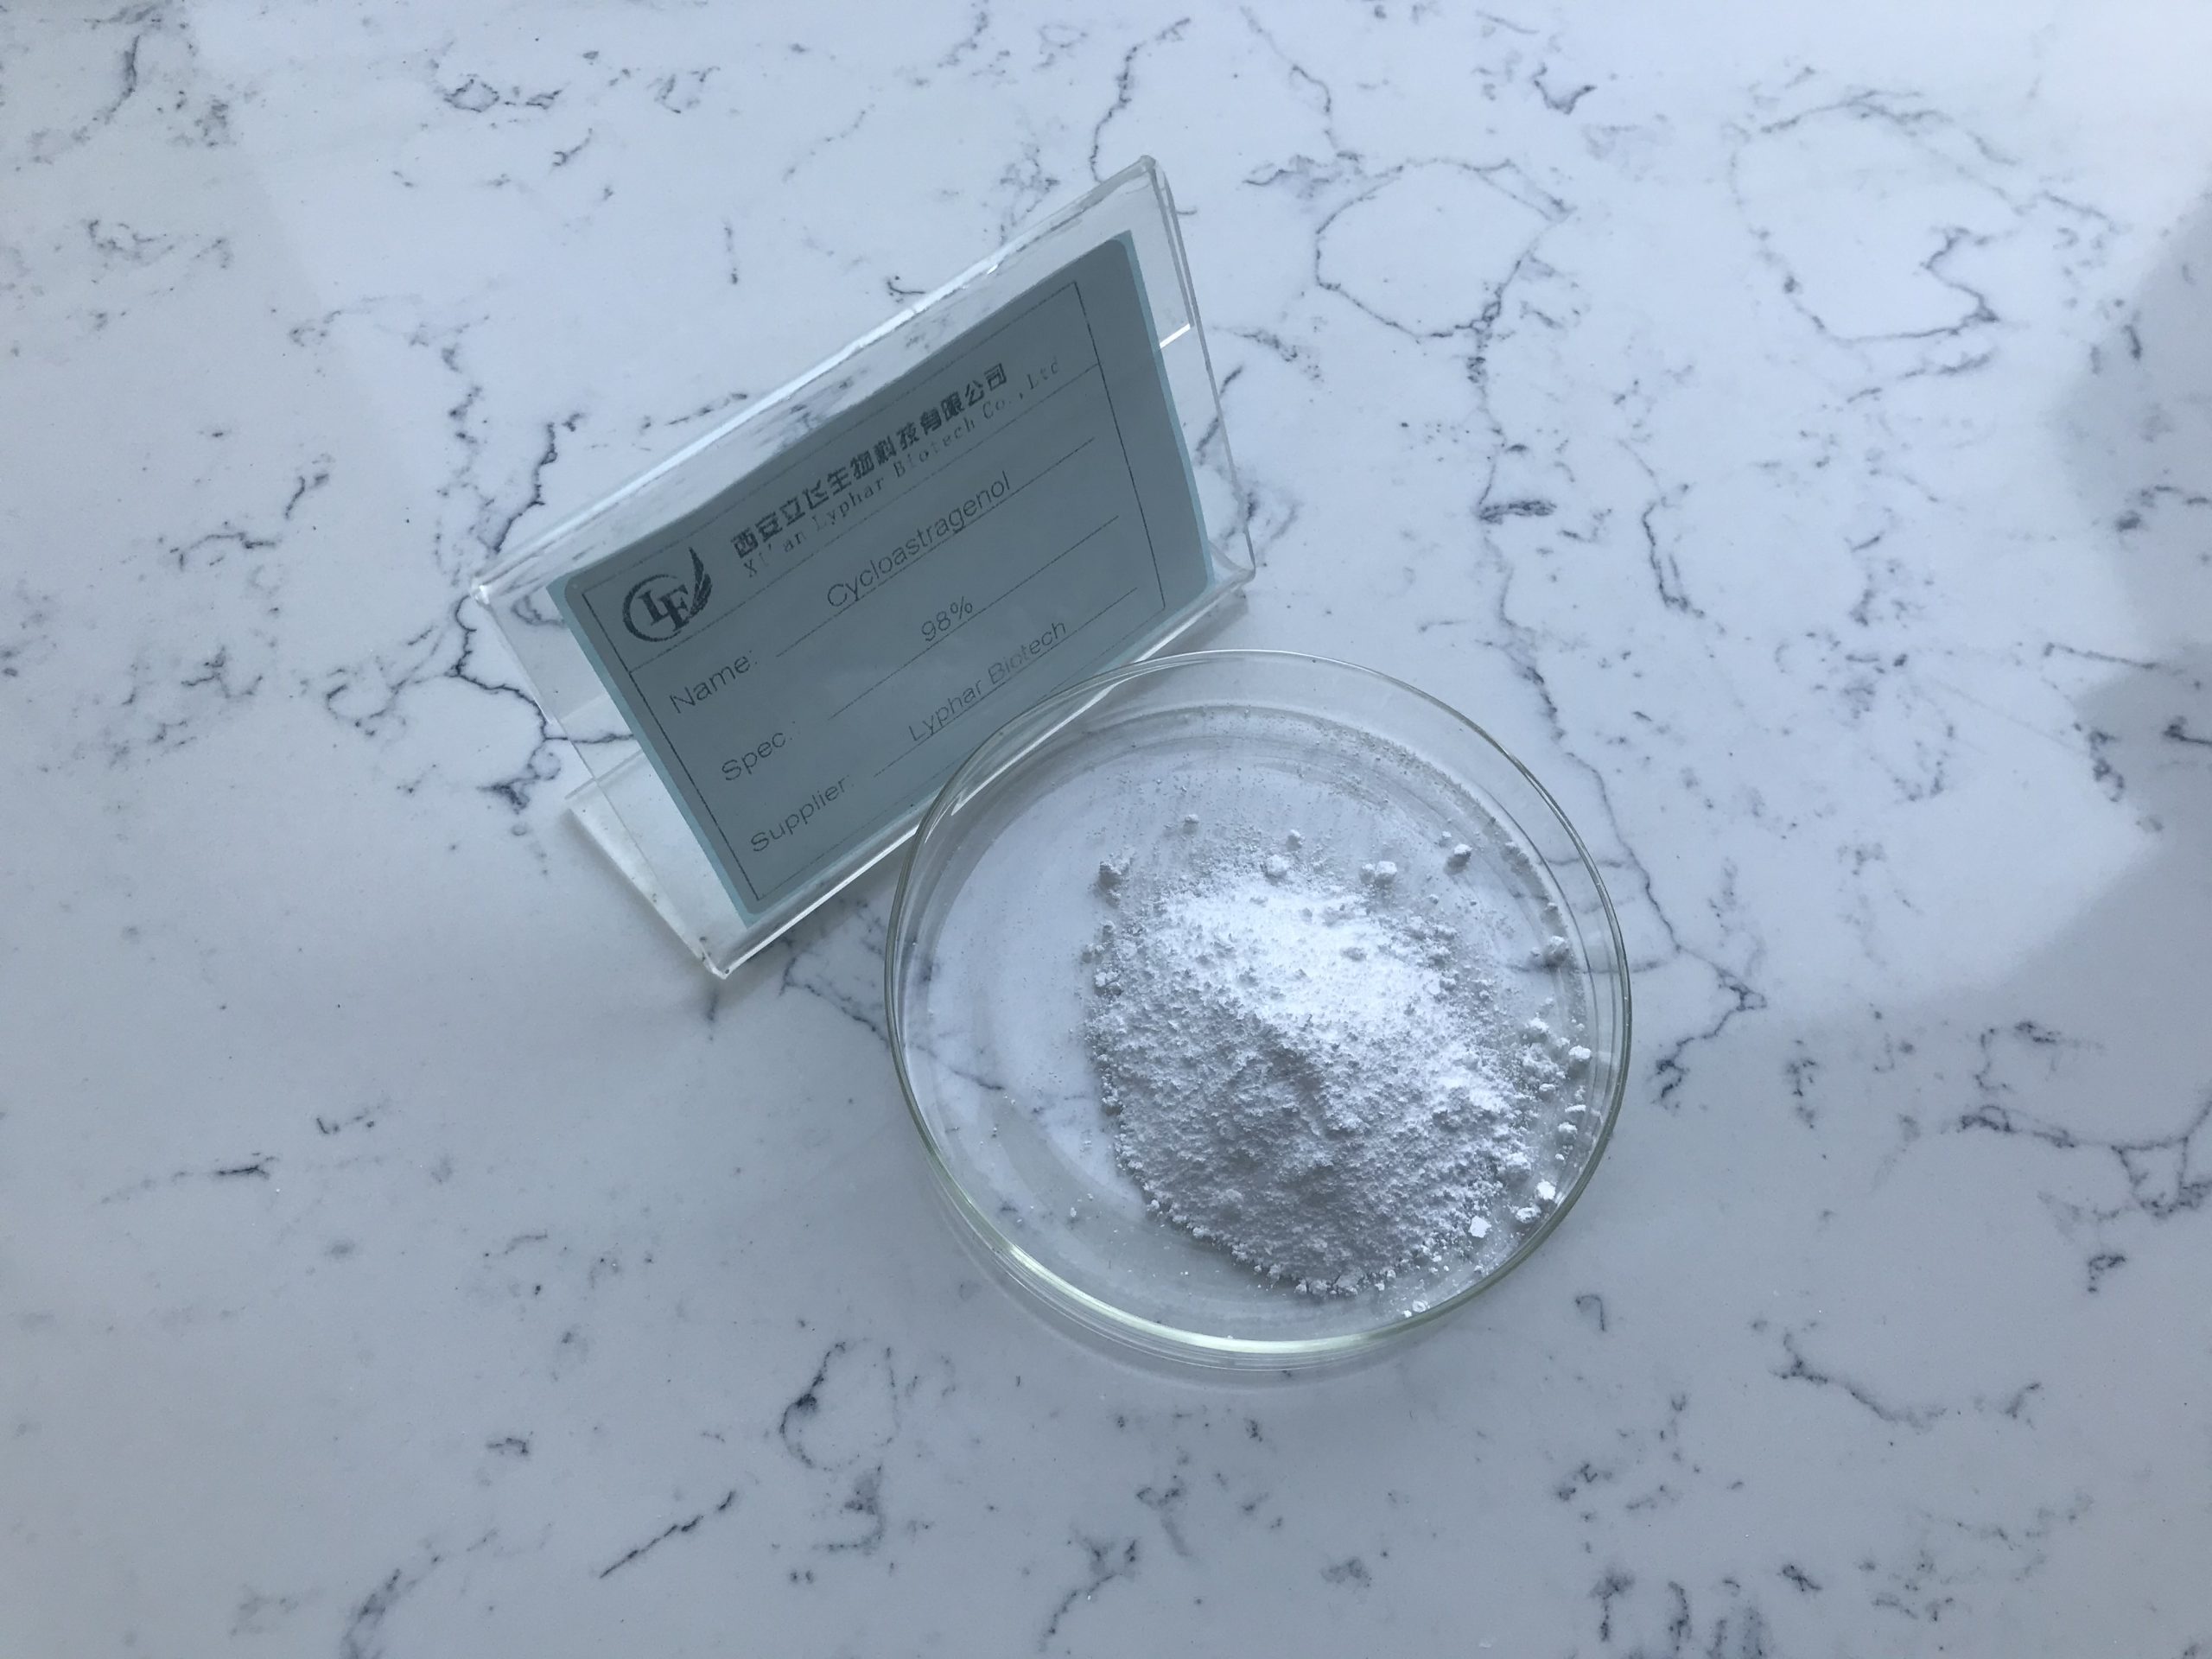 Buy Cycloastragenol powder-Xi'an Lyphar Biotech Co., Ltd